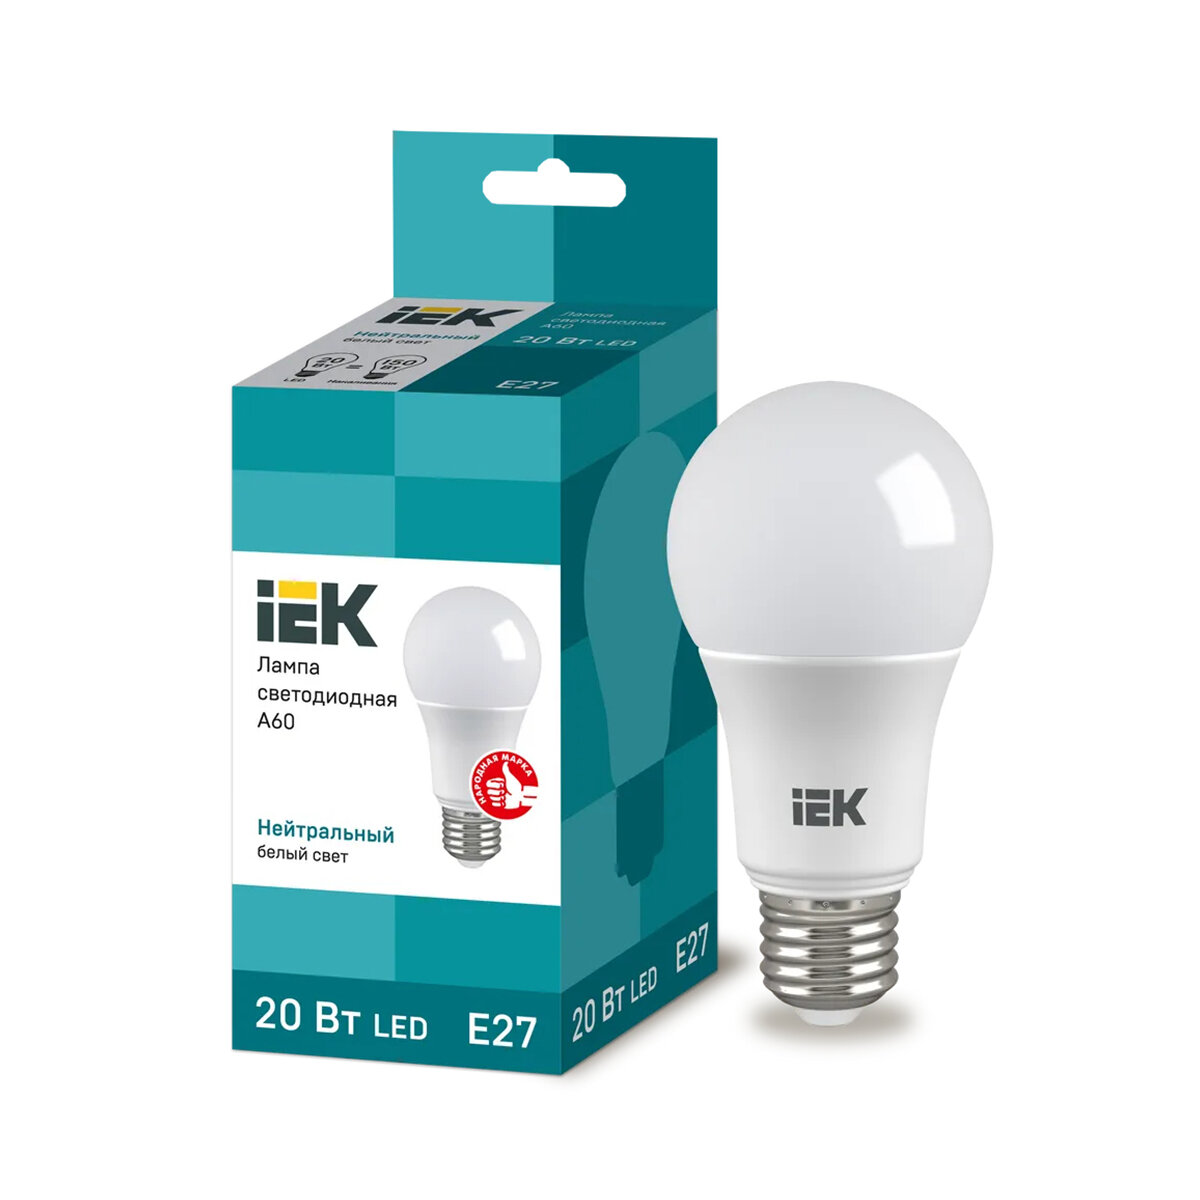 Лампа светодиодная LED IEK Шар, E27, A60, 20 Вт, 4000 K, нейтральный свет